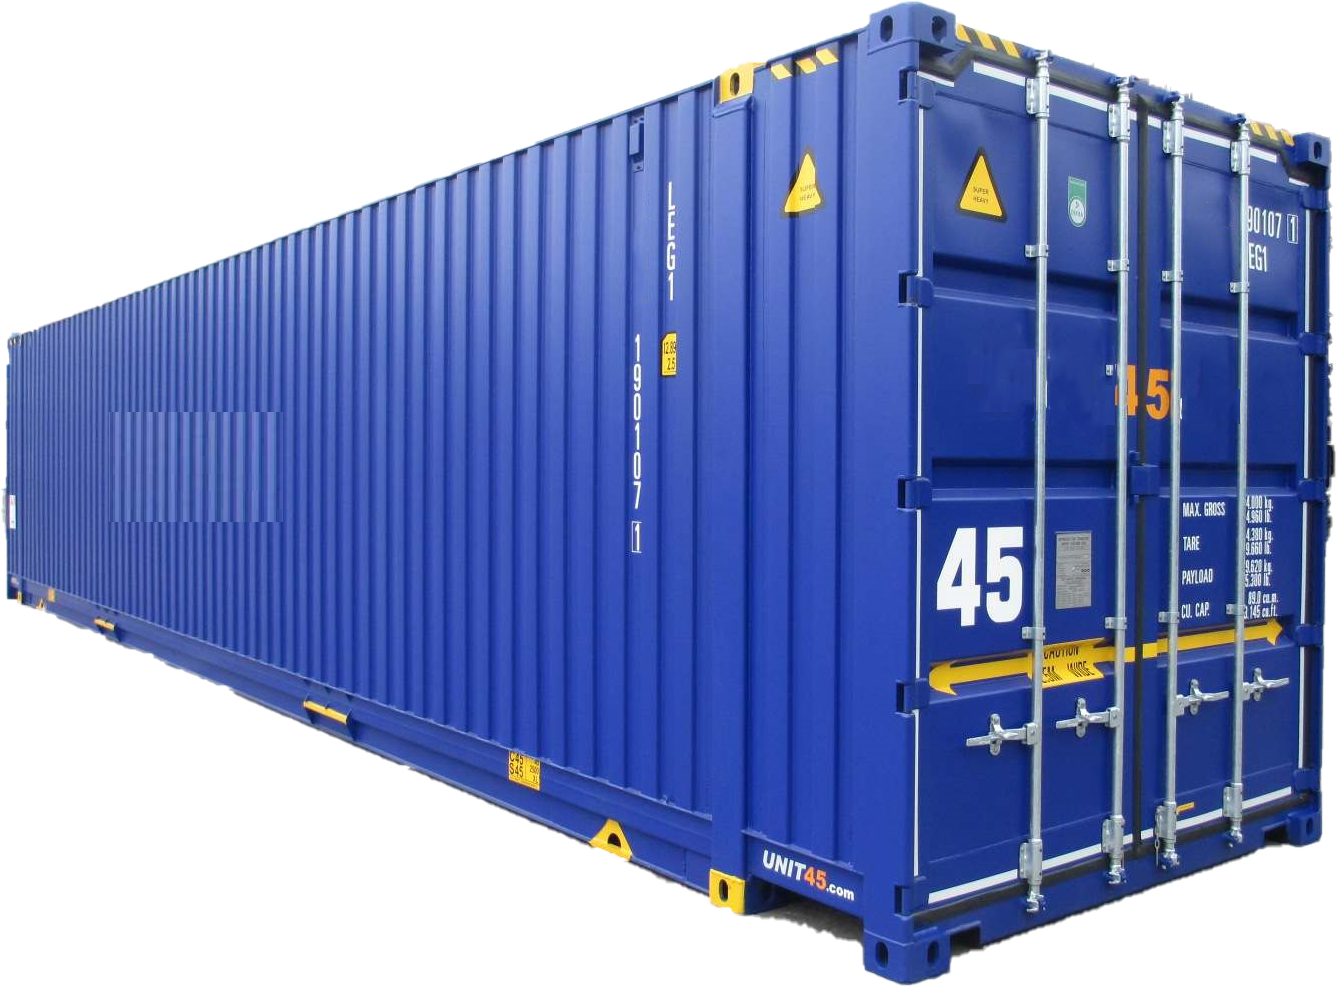 Kích thước container 45 feet, thông số kỹ thuật tiêu chuẩn, báo giá